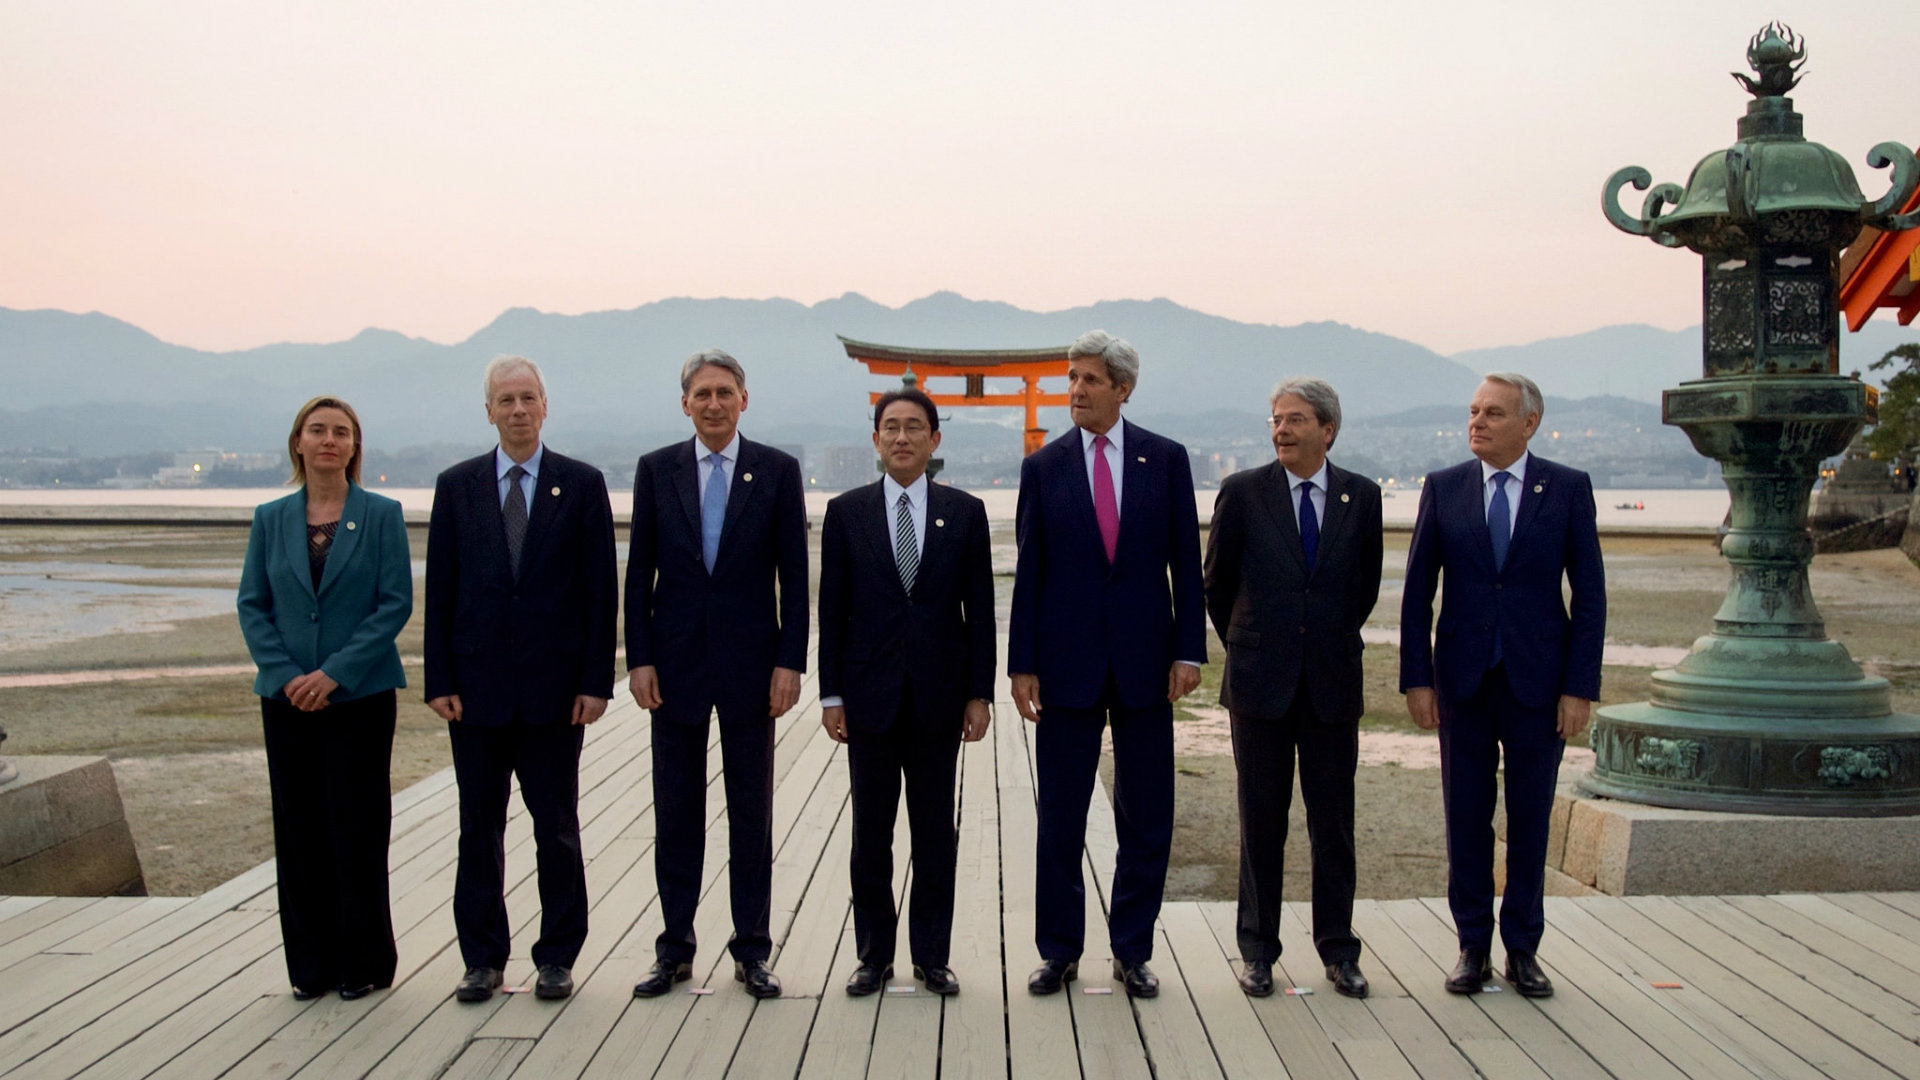 Cuộc họp của các Ngoại trưởng G7 (Hoa Kỳ, Canada, Ý, Liên Hiệp Âu Châu, Pháp, Nhật Bản và Anh Quốc) diễn ra tại Hiroshima, Nhật Bản ngày 10-11 Tháng Tư vừa qua.